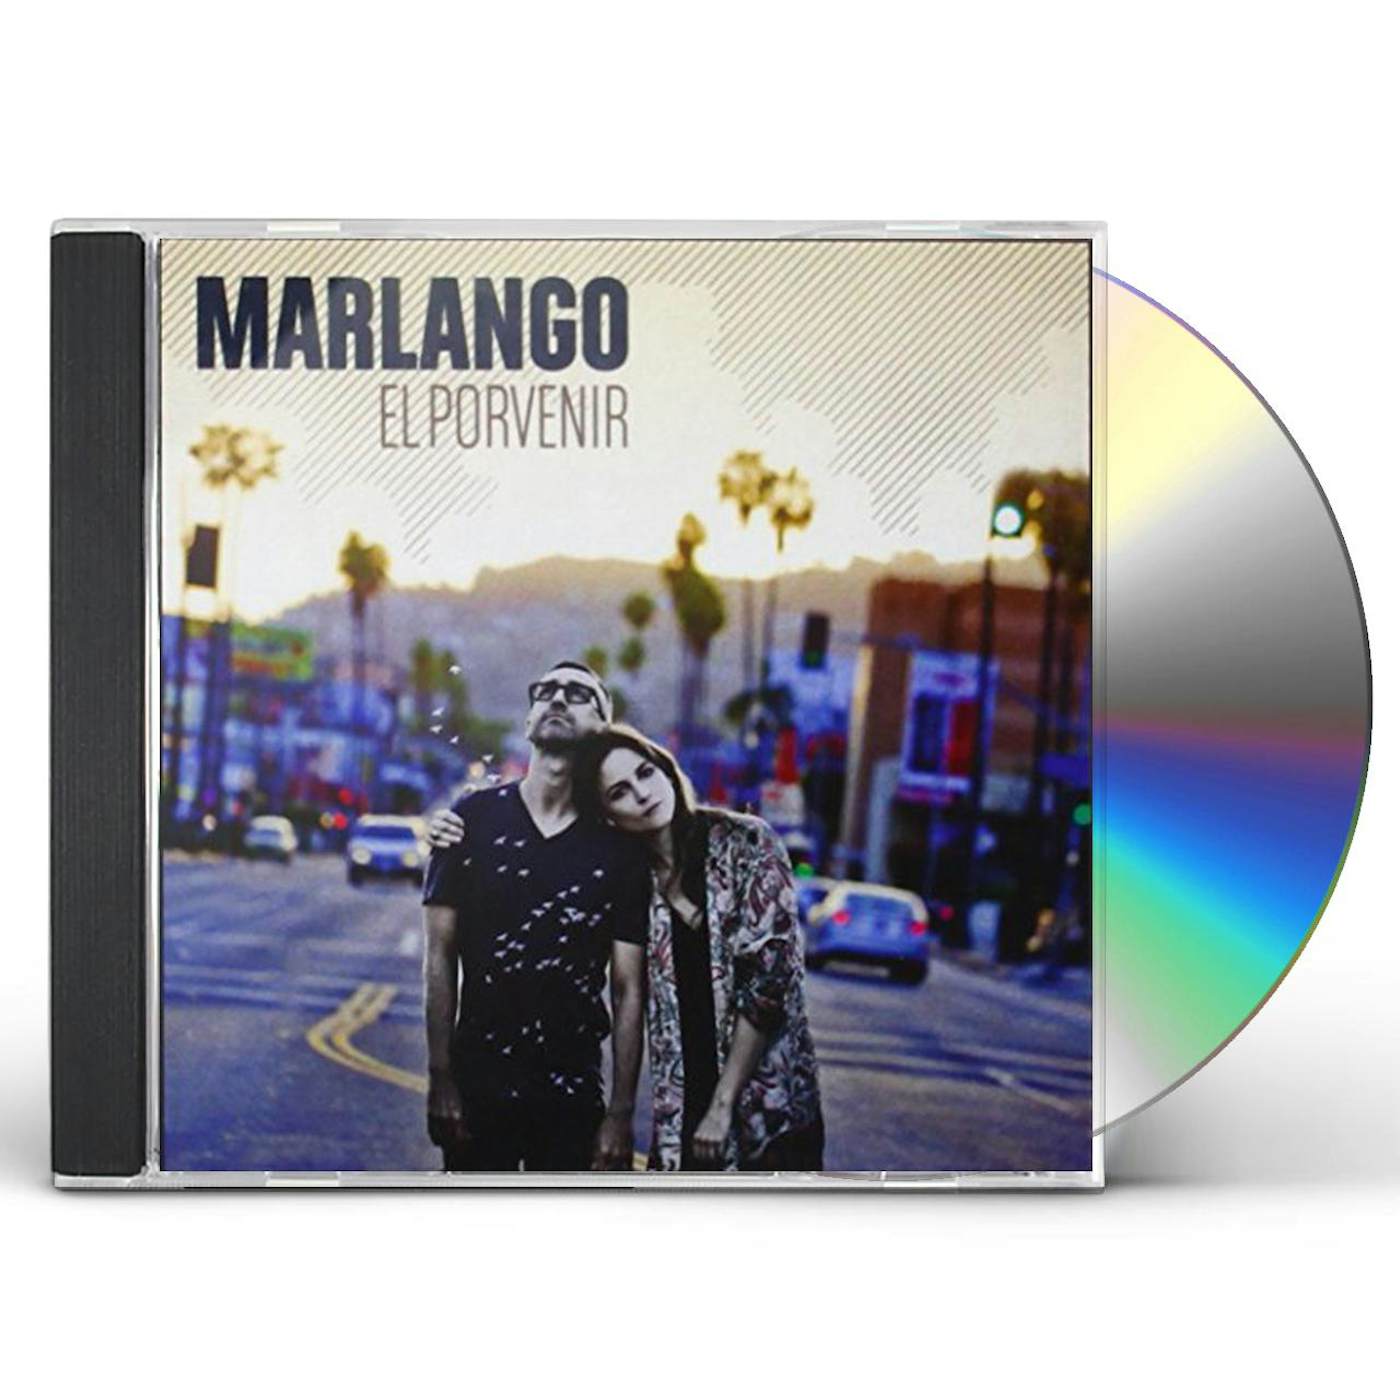 Marlango EL PORVENIR CD